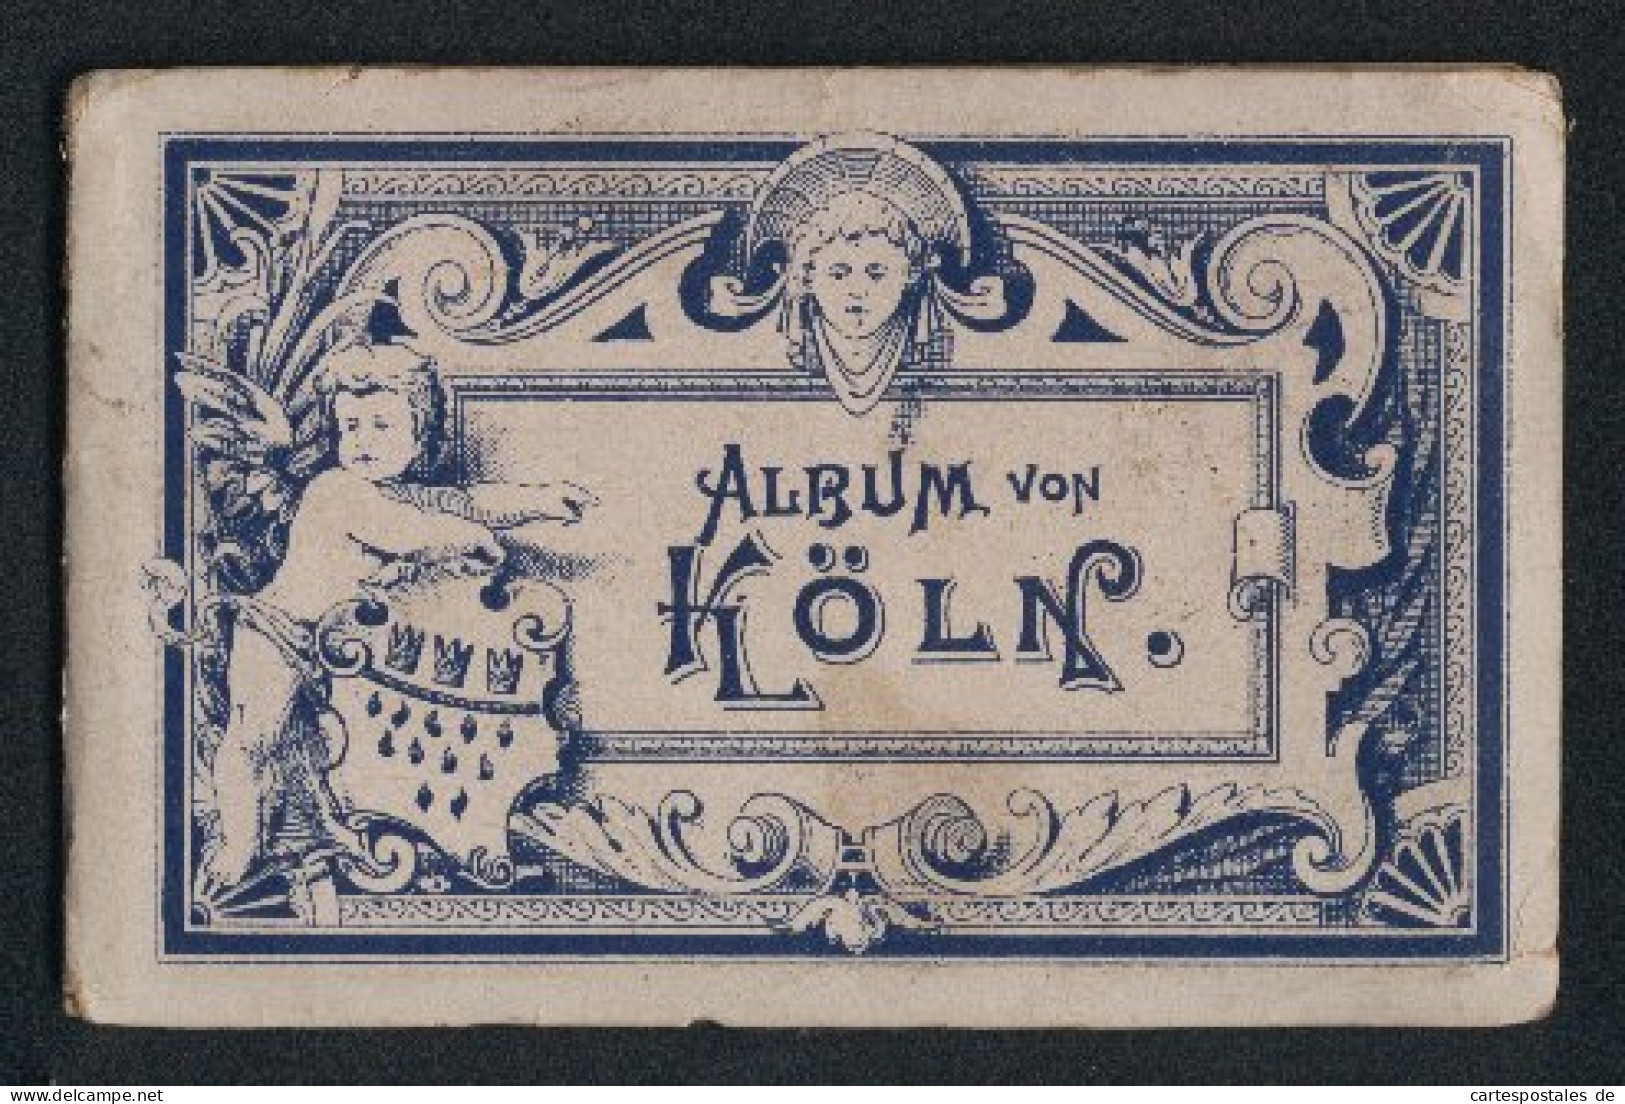 Leporello-Album Köln Mit 12 Lithographie-Ansichten, Bahnhof, Flora, Hohenzollerring, Museum Walraff-Richartz, Dom, Po  - Lithografieën